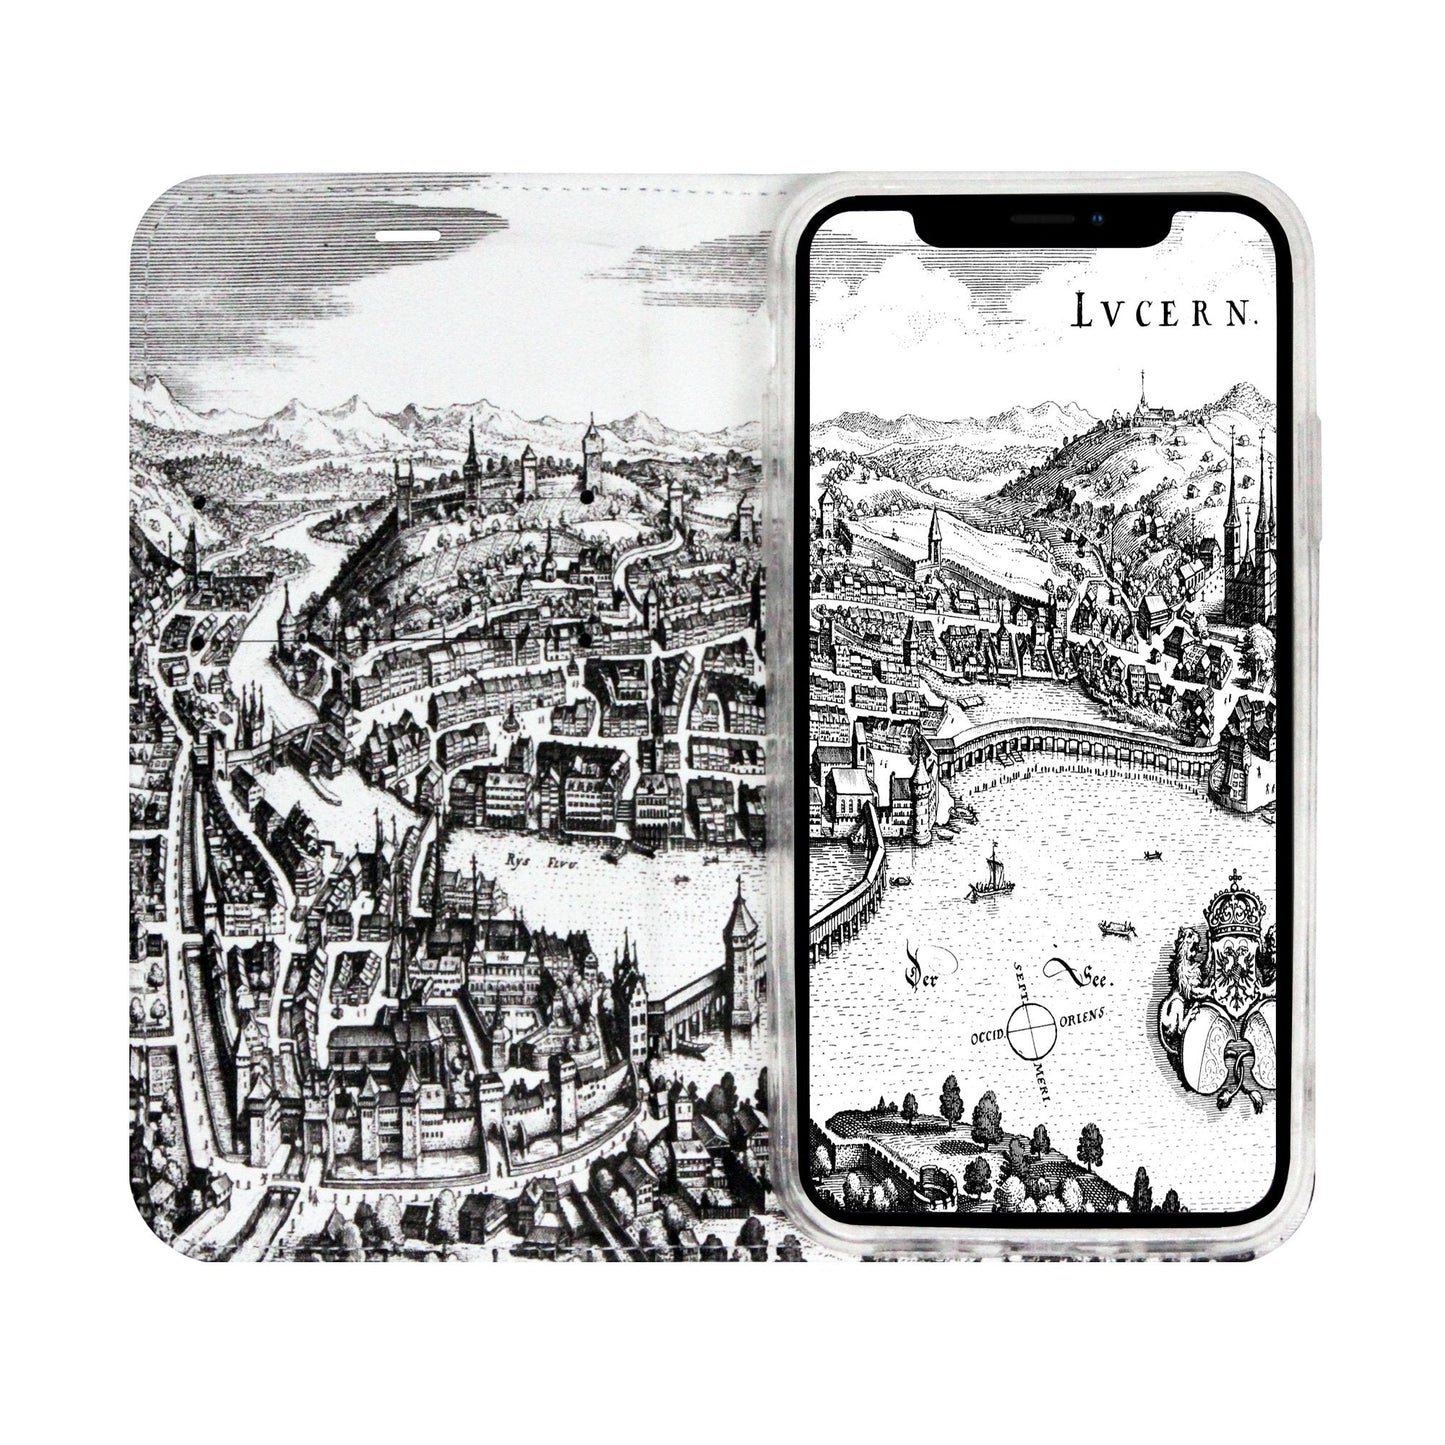 Luzern City Panorama Case für iPhone XR